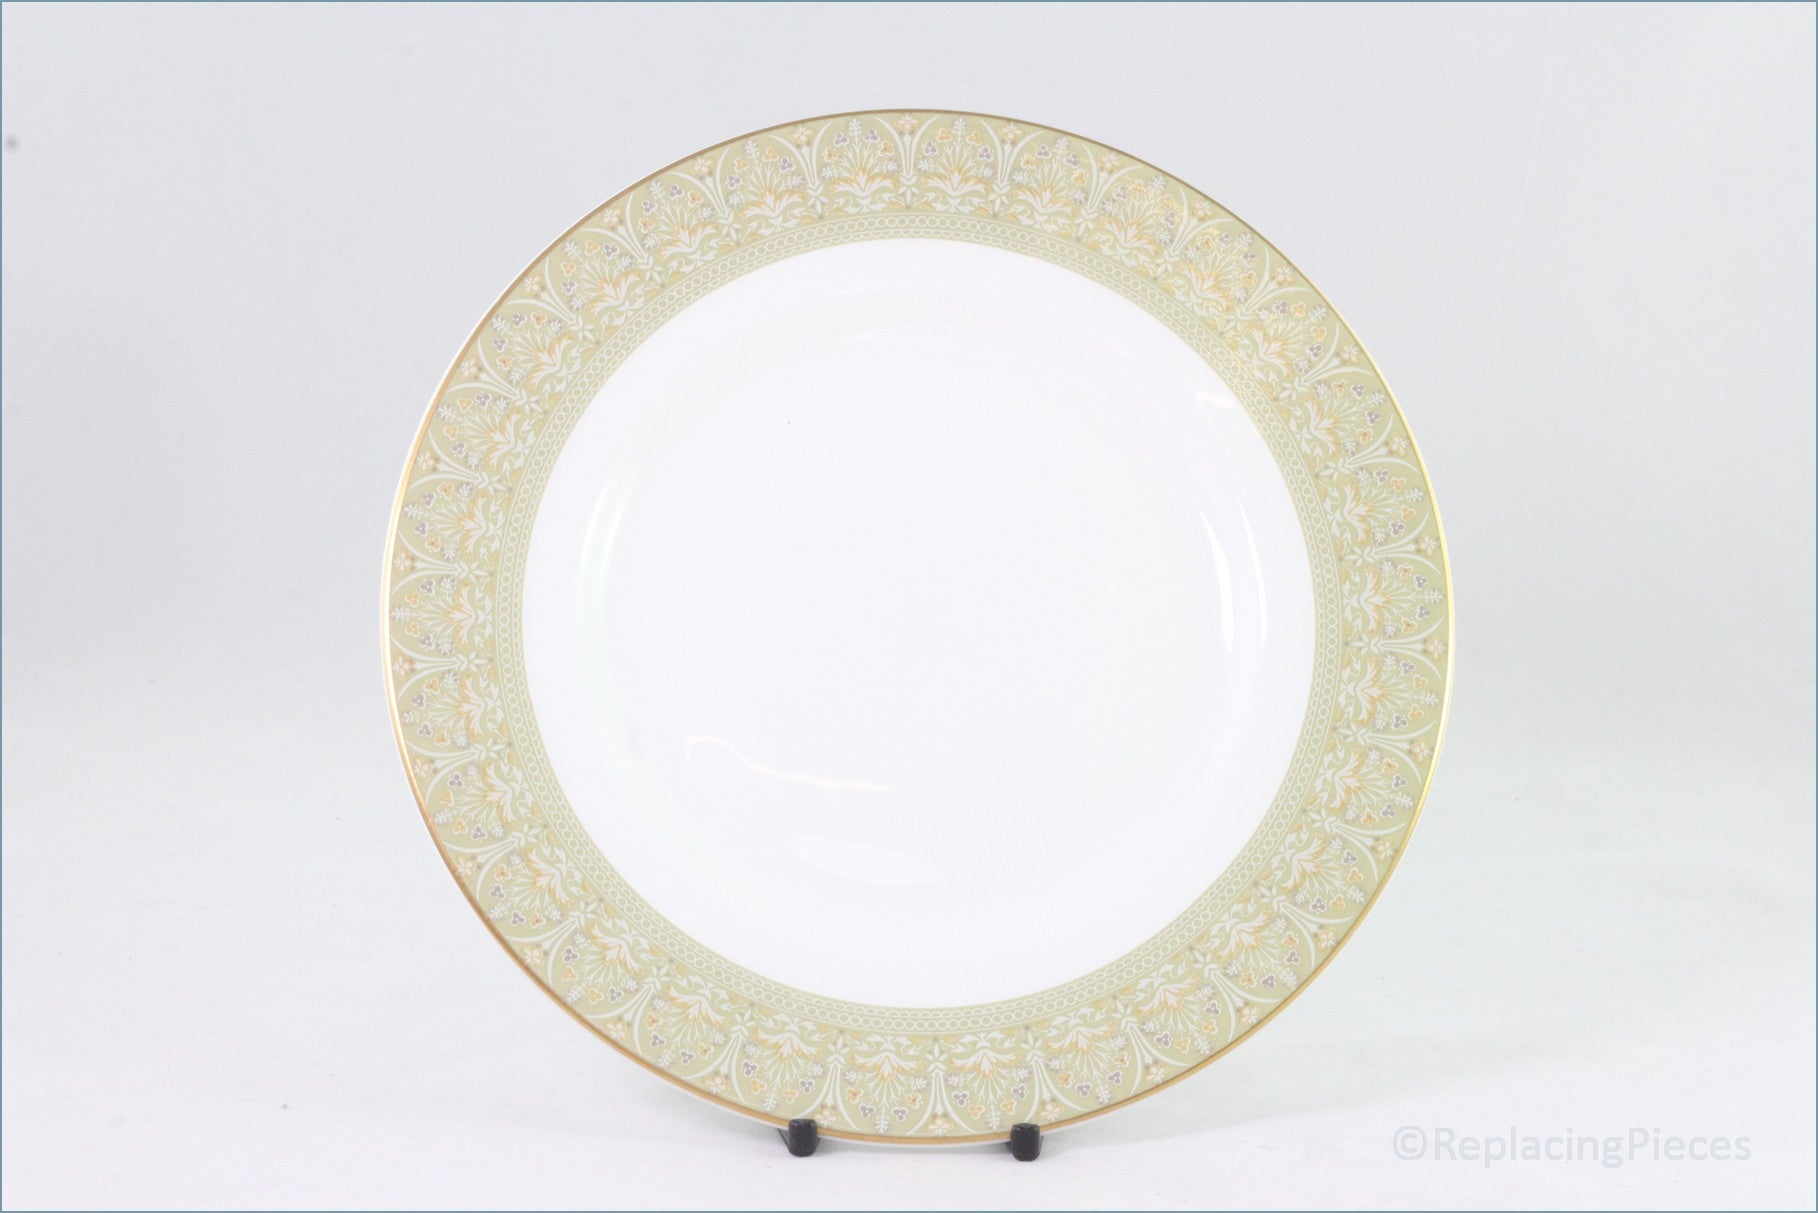 Royal Doulton - Sonnet (H5012) - Dinner Plate